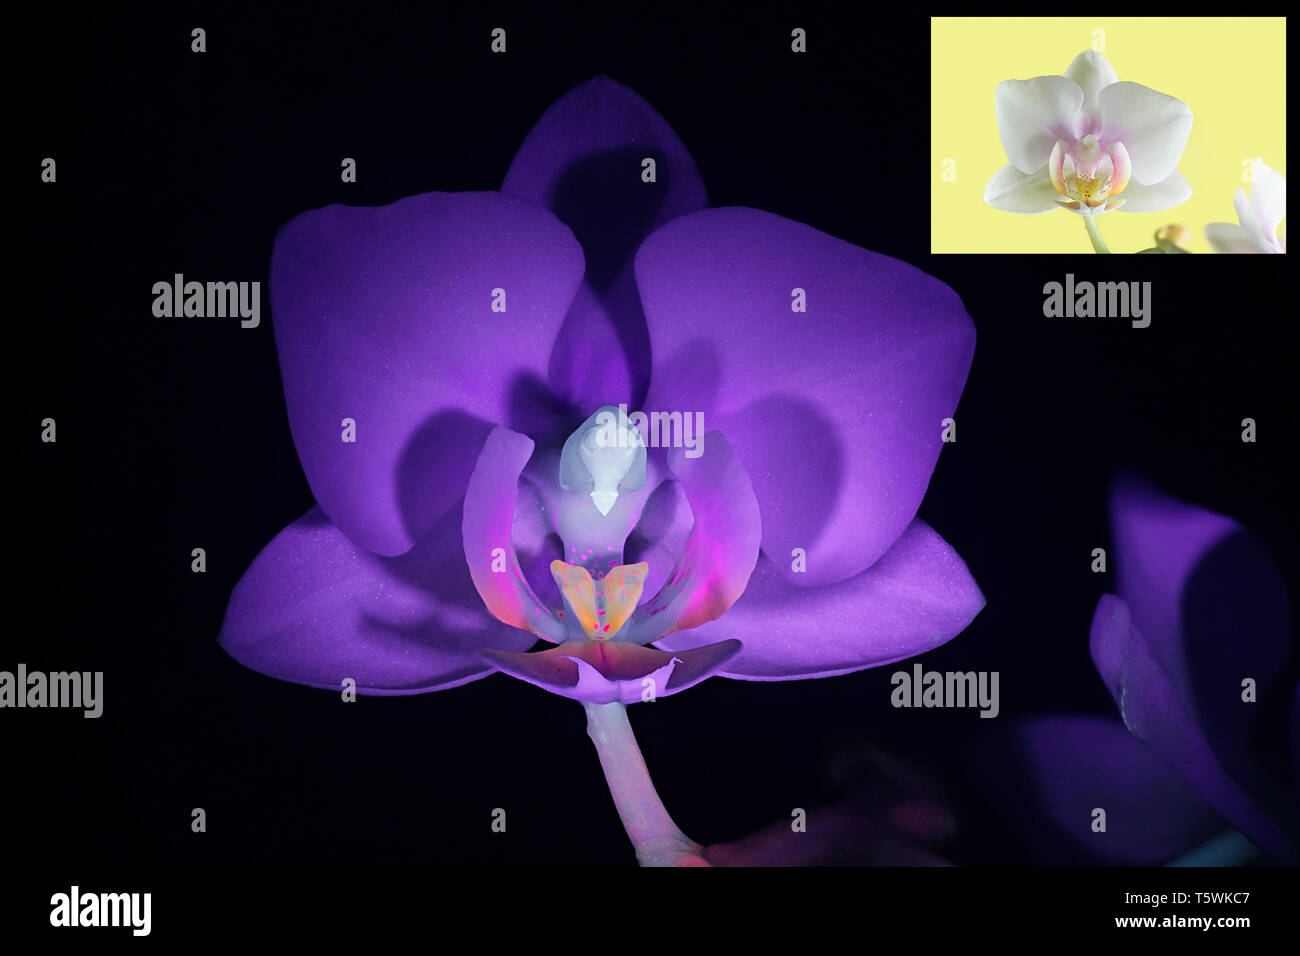 Moth orchid fluorescenza in luce ultravioletta (365 nm). Immagine di piccole dimensioni che mostra lo stesso campione in normale luce diurna. Foto Stock